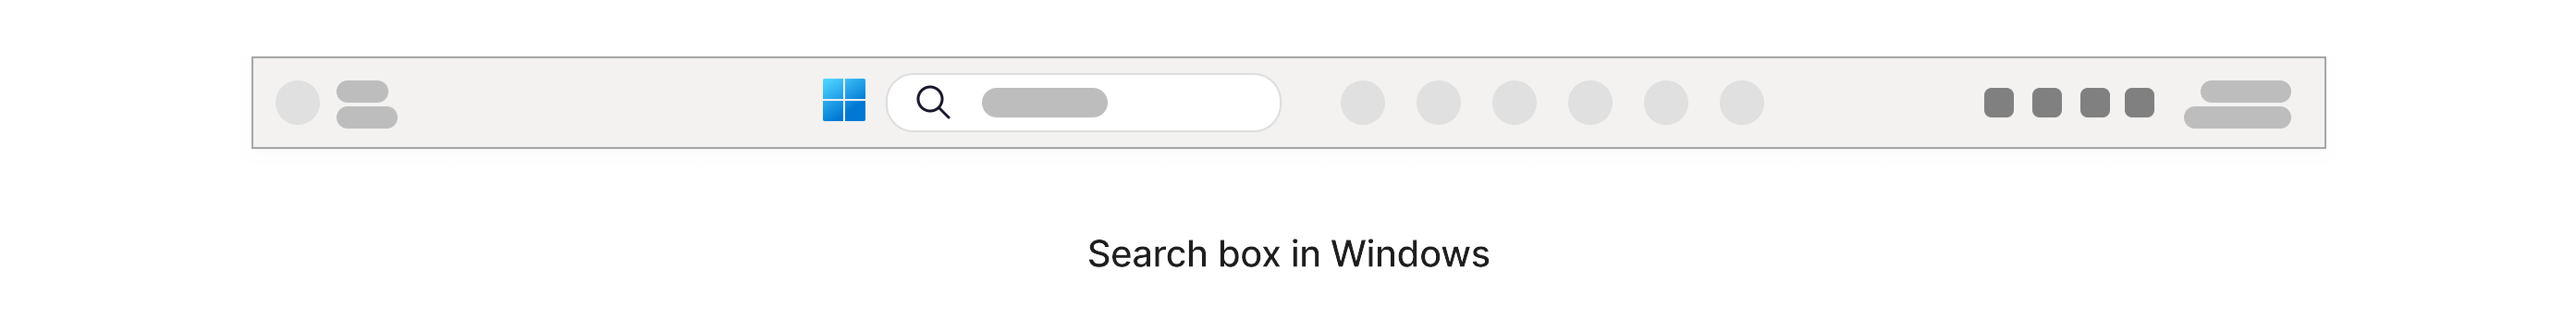 Πλαίσιο αναζήτησης με εικονίδιο μεγέθυνσης που βρίσκεται μέσα στη γραμμή εργασιών των Windows στο κάτω μέρος της οθόνης.